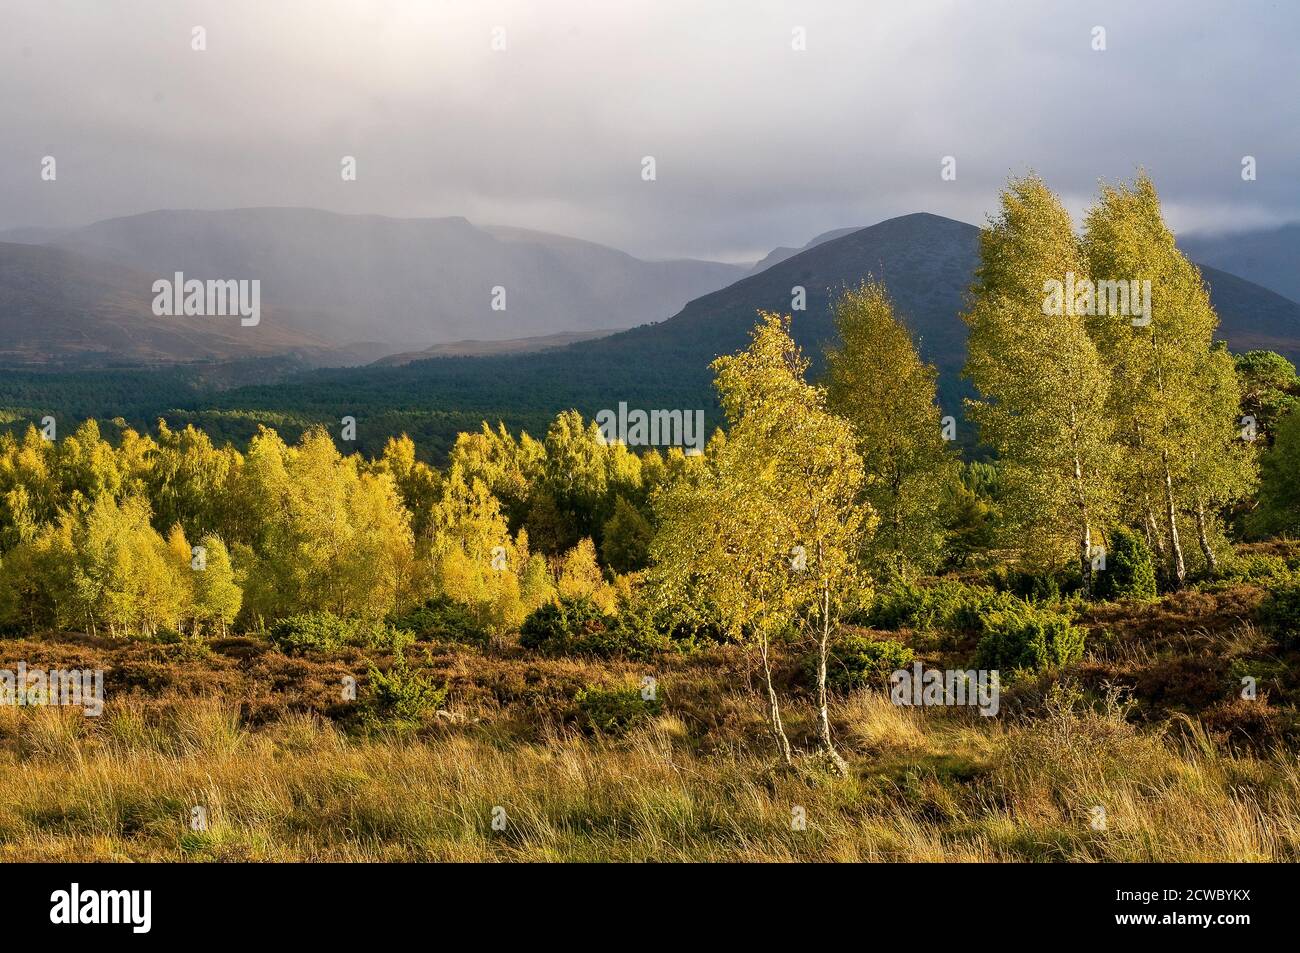 Des averses de pluie d'automne traversent le Lairig Gru dans le parc national de Cairngorms Aviemore en Écosse. Banque D'Images